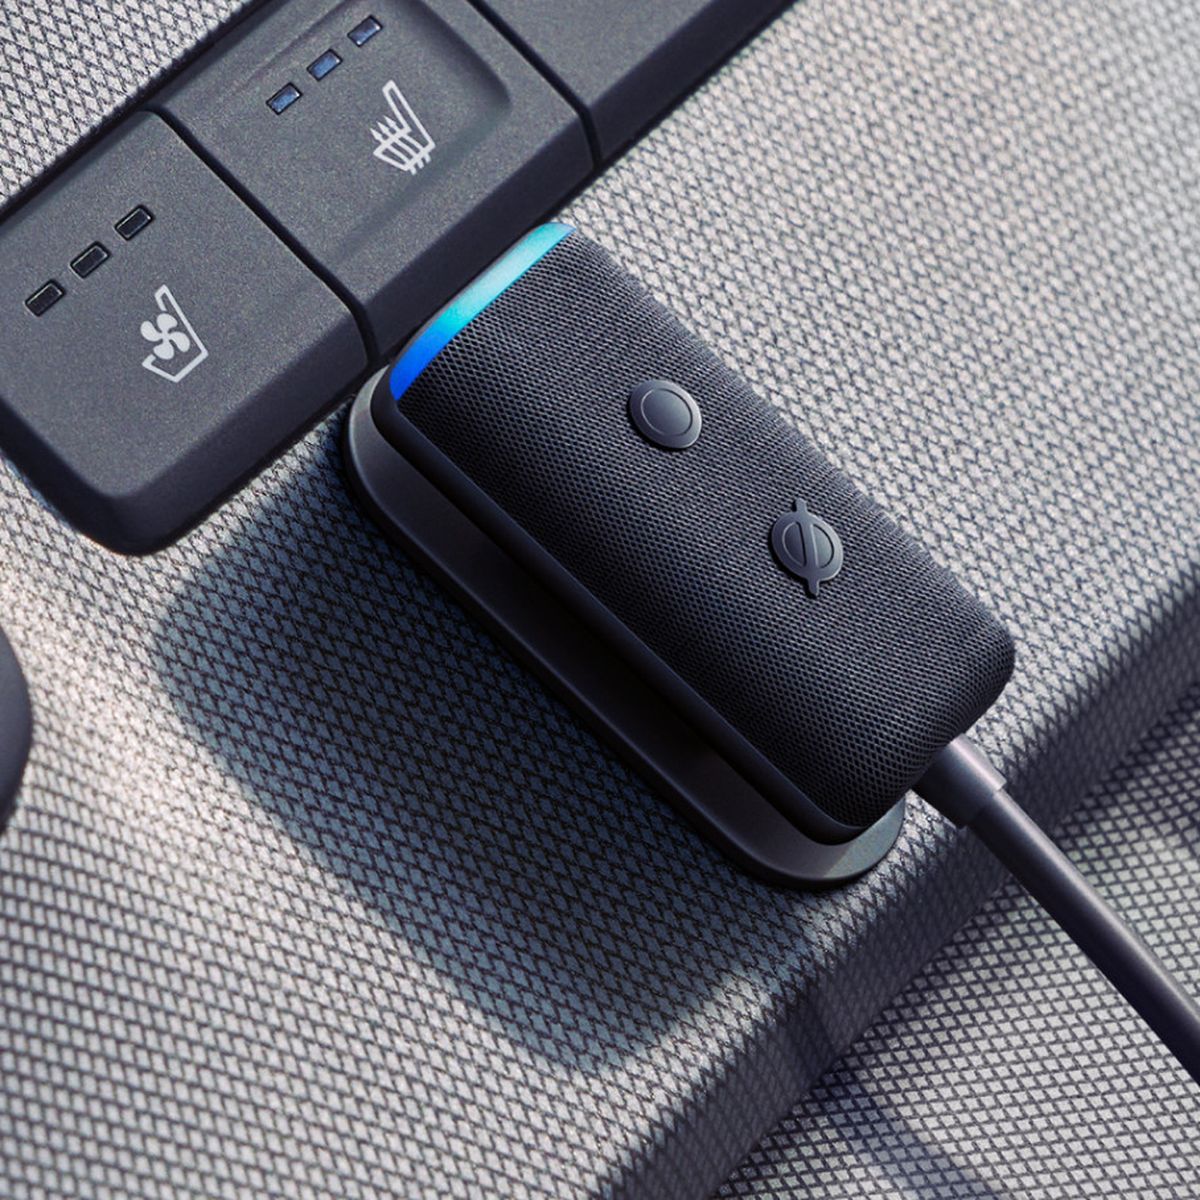 Echo Auto (2.ª gen.)  Alexa en tu coche : : Otros Productos